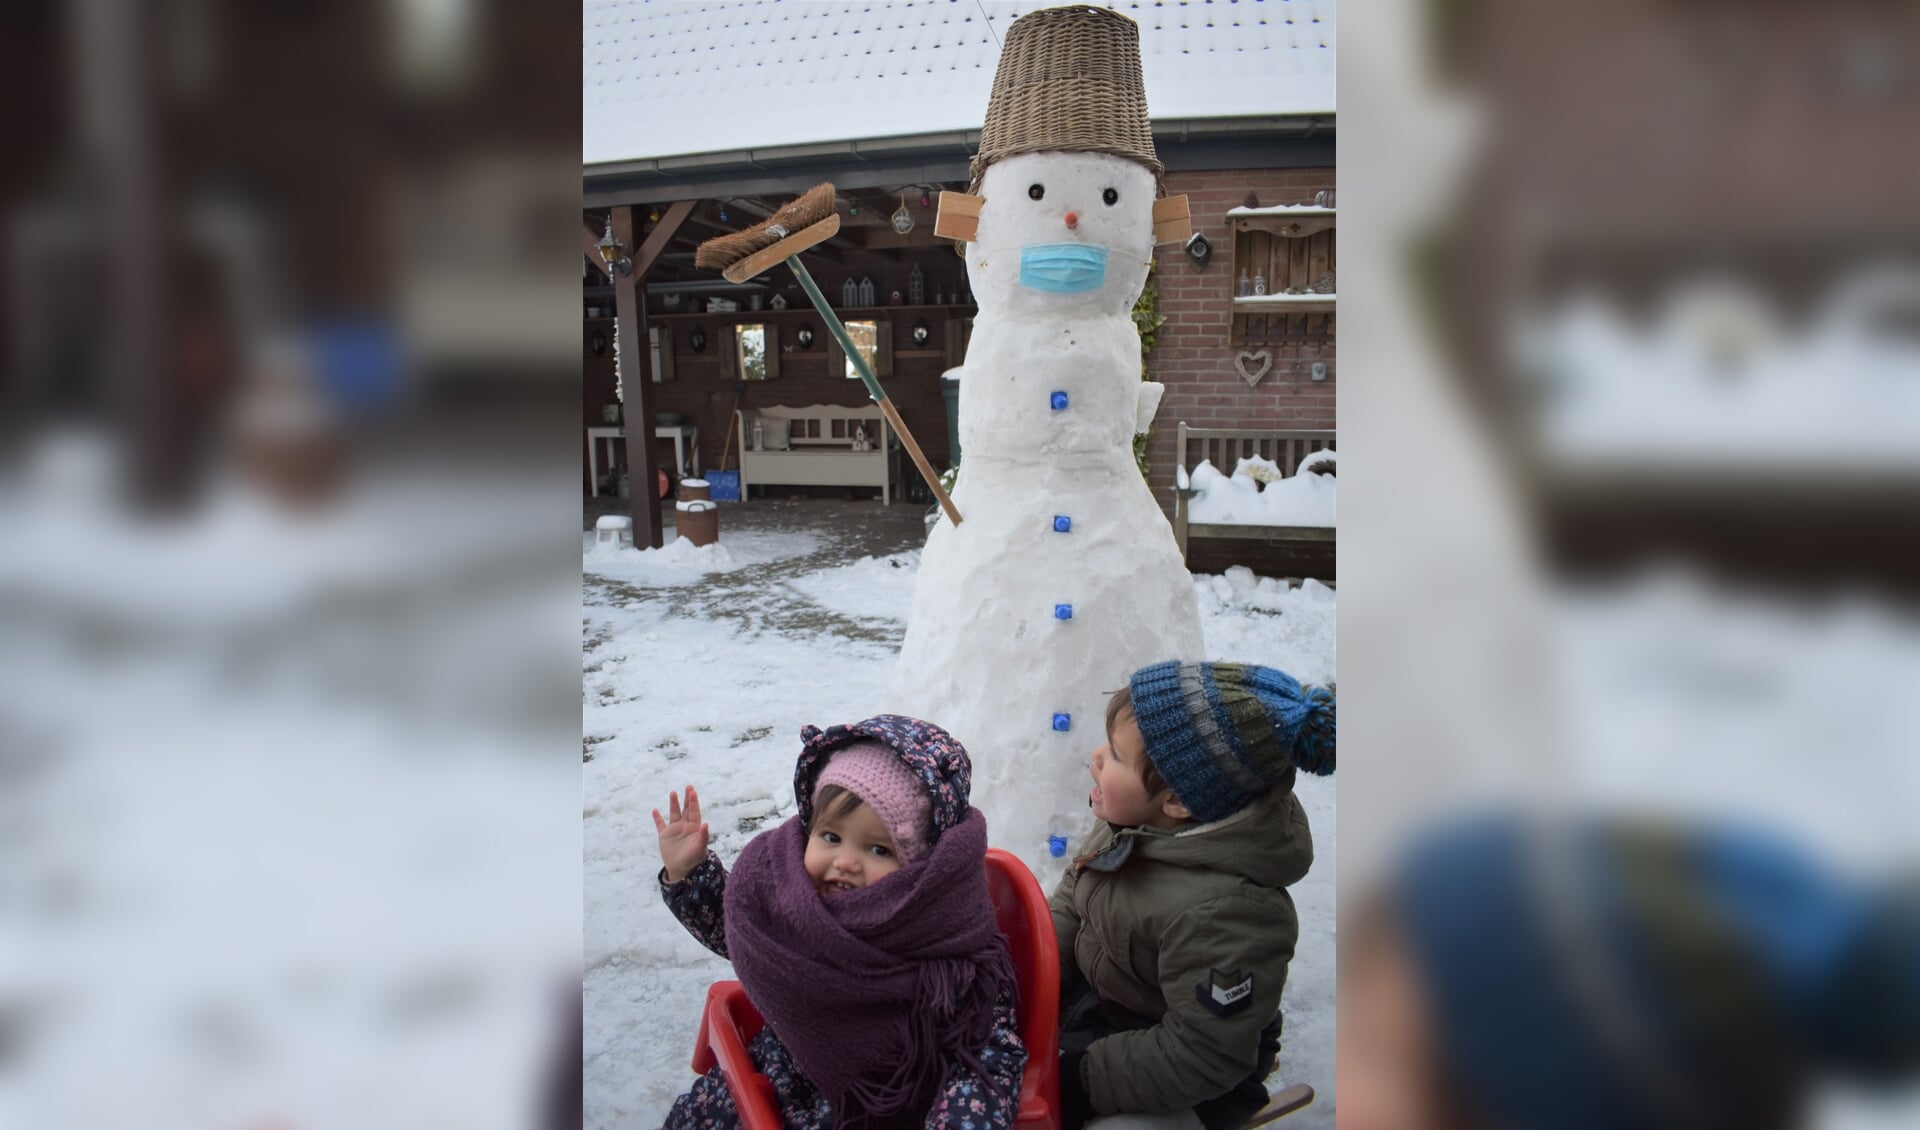 Ezra en Salomé hebben met opa een sneeuwpop gemaakt. Alles Corona-proof!